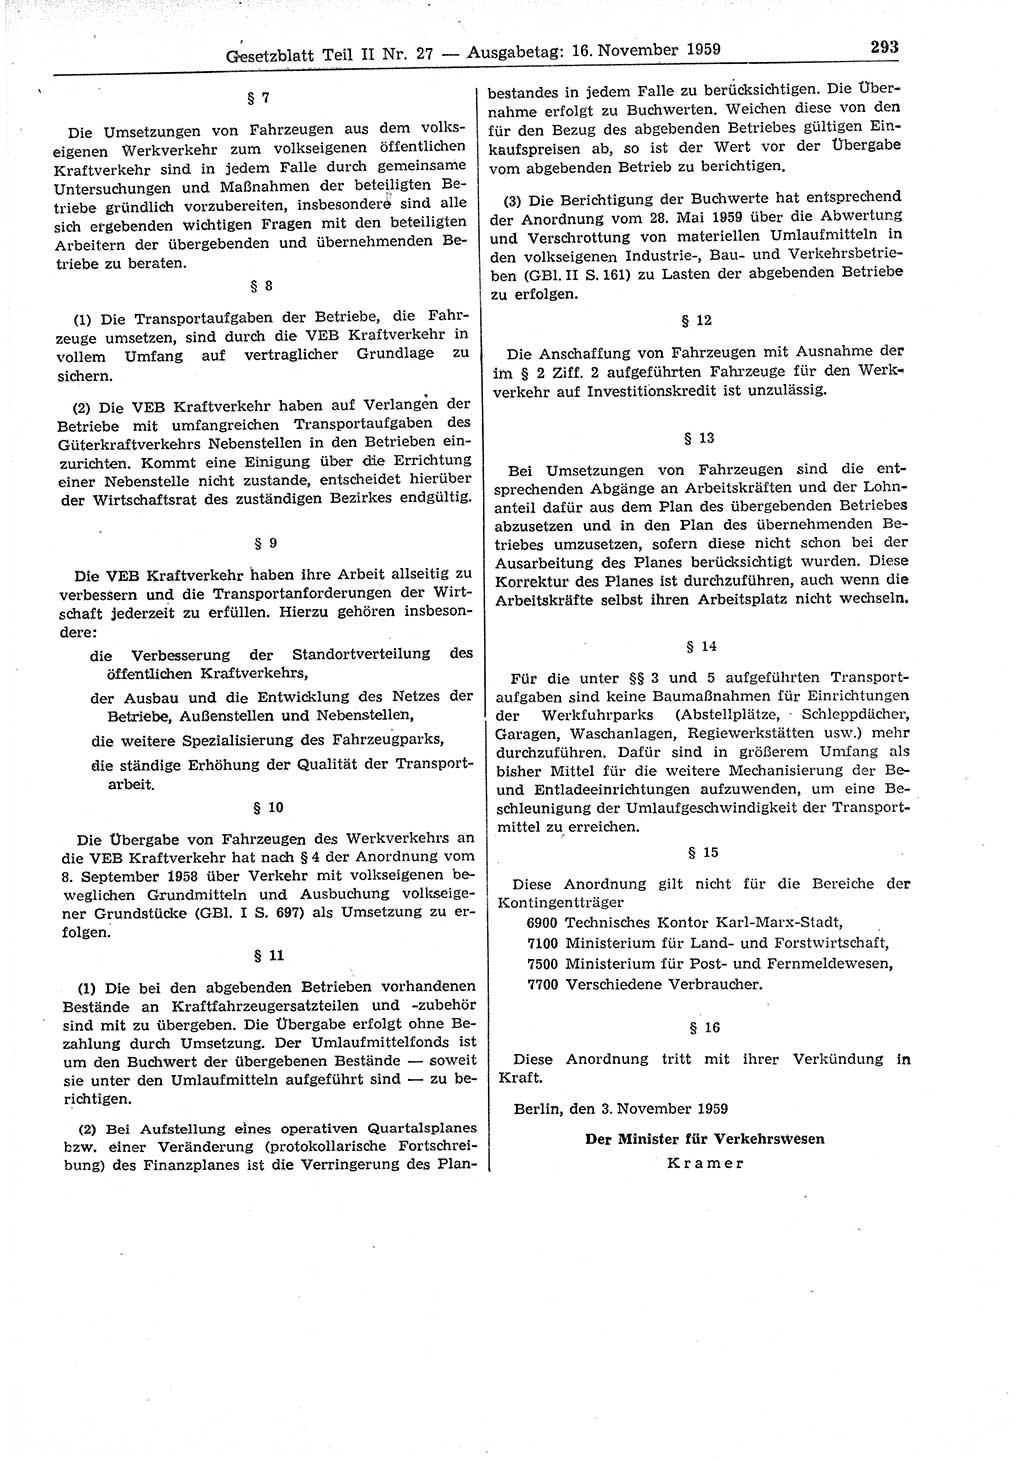 Gesetzblatt (GBl.) der Deutschen Demokratischen Republik (DDR) Teil ⅠⅠ 1959, Seite 293 (GBl. DDR ⅠⅠ 1959, S. 293)